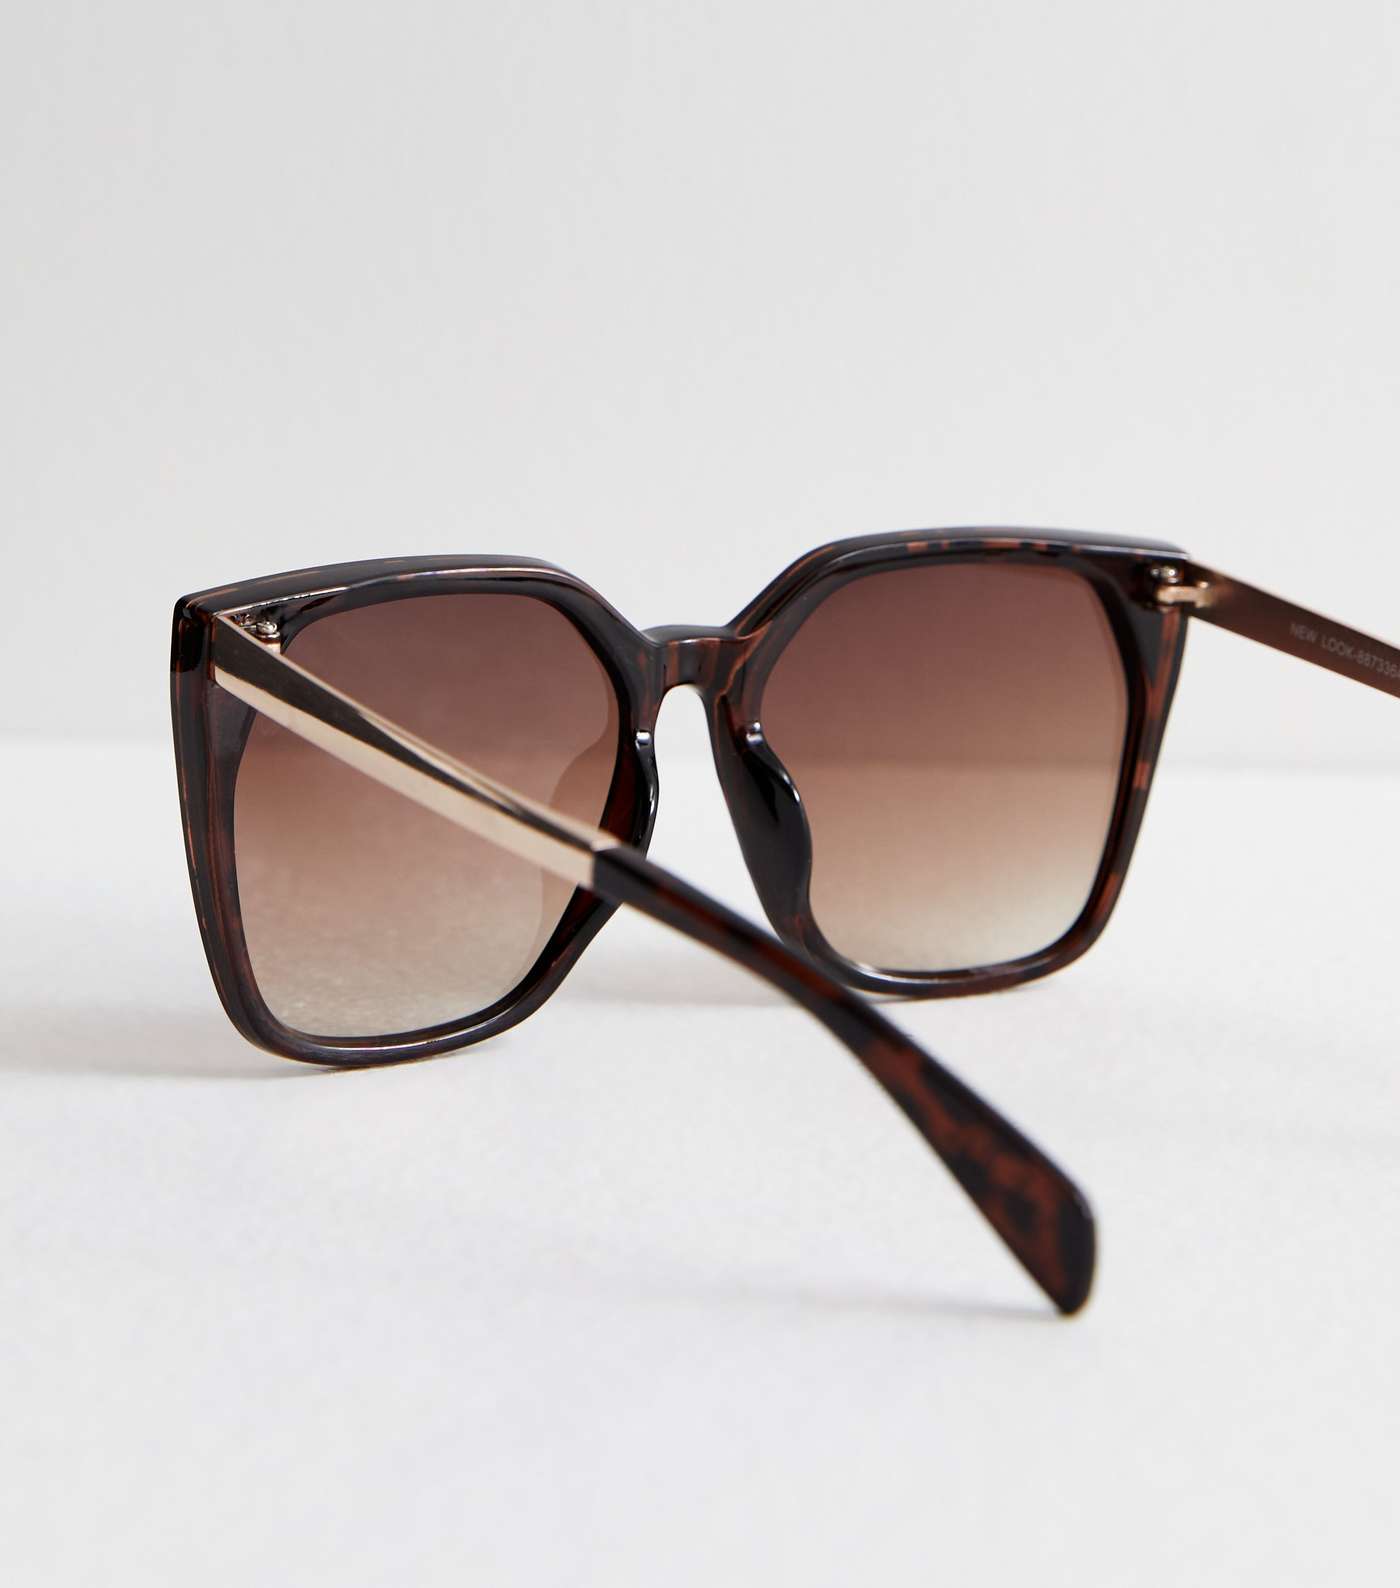 Dark Brown Tortoiseshell Effect Oversized Sunglasses Image 4